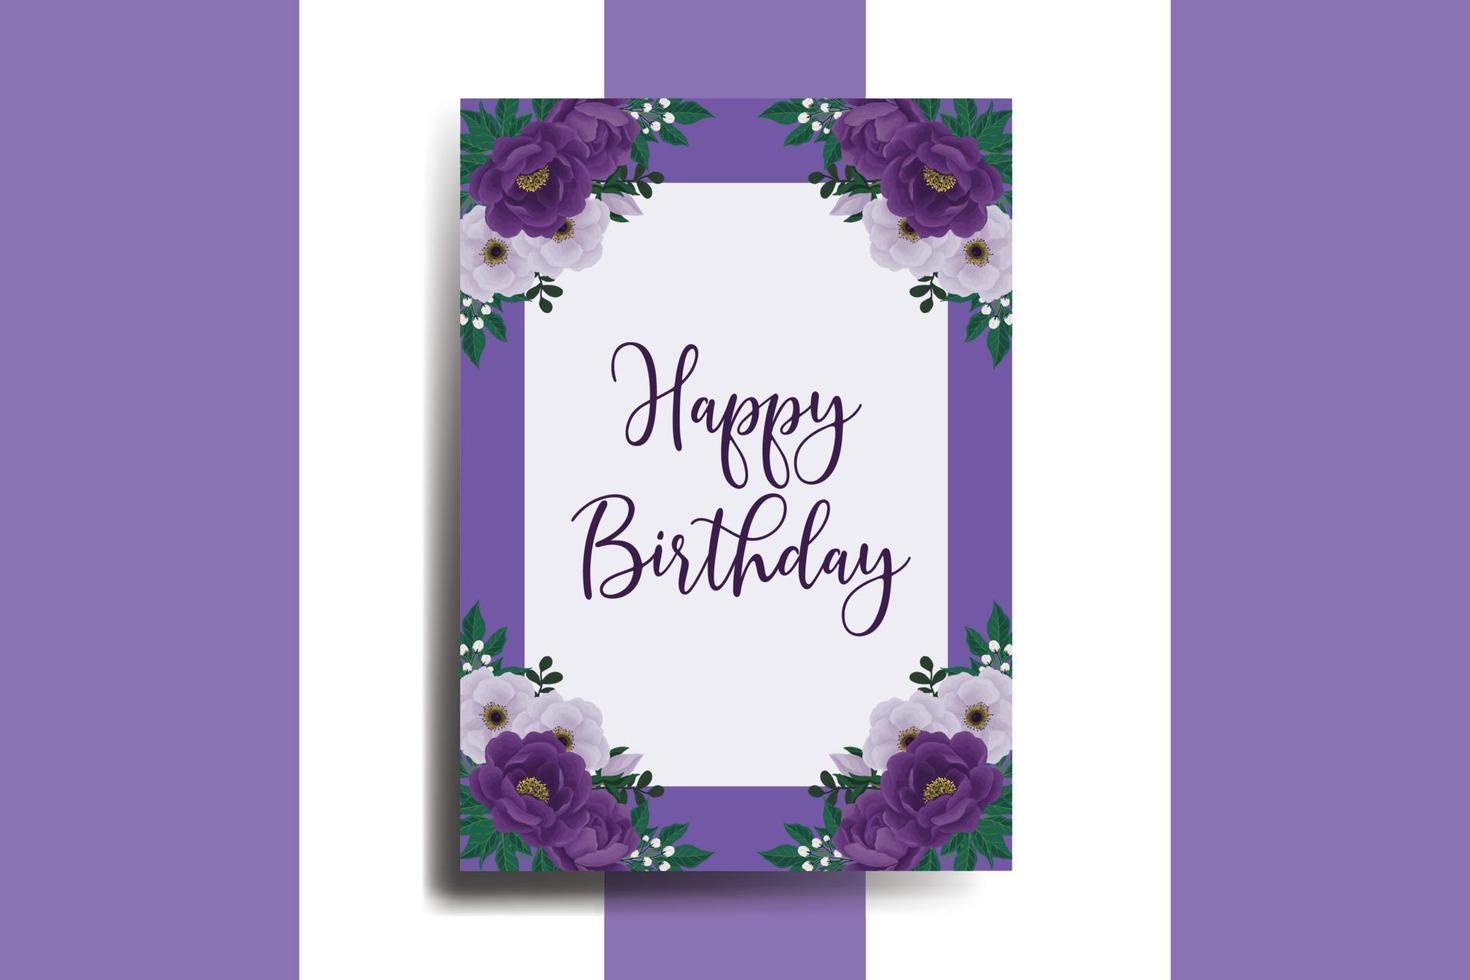 tarjeta de felicitación tarjeta de cumpleaños acuarela digital dibujado a mano plantilla de diseño de flor de peonía púrpura vector